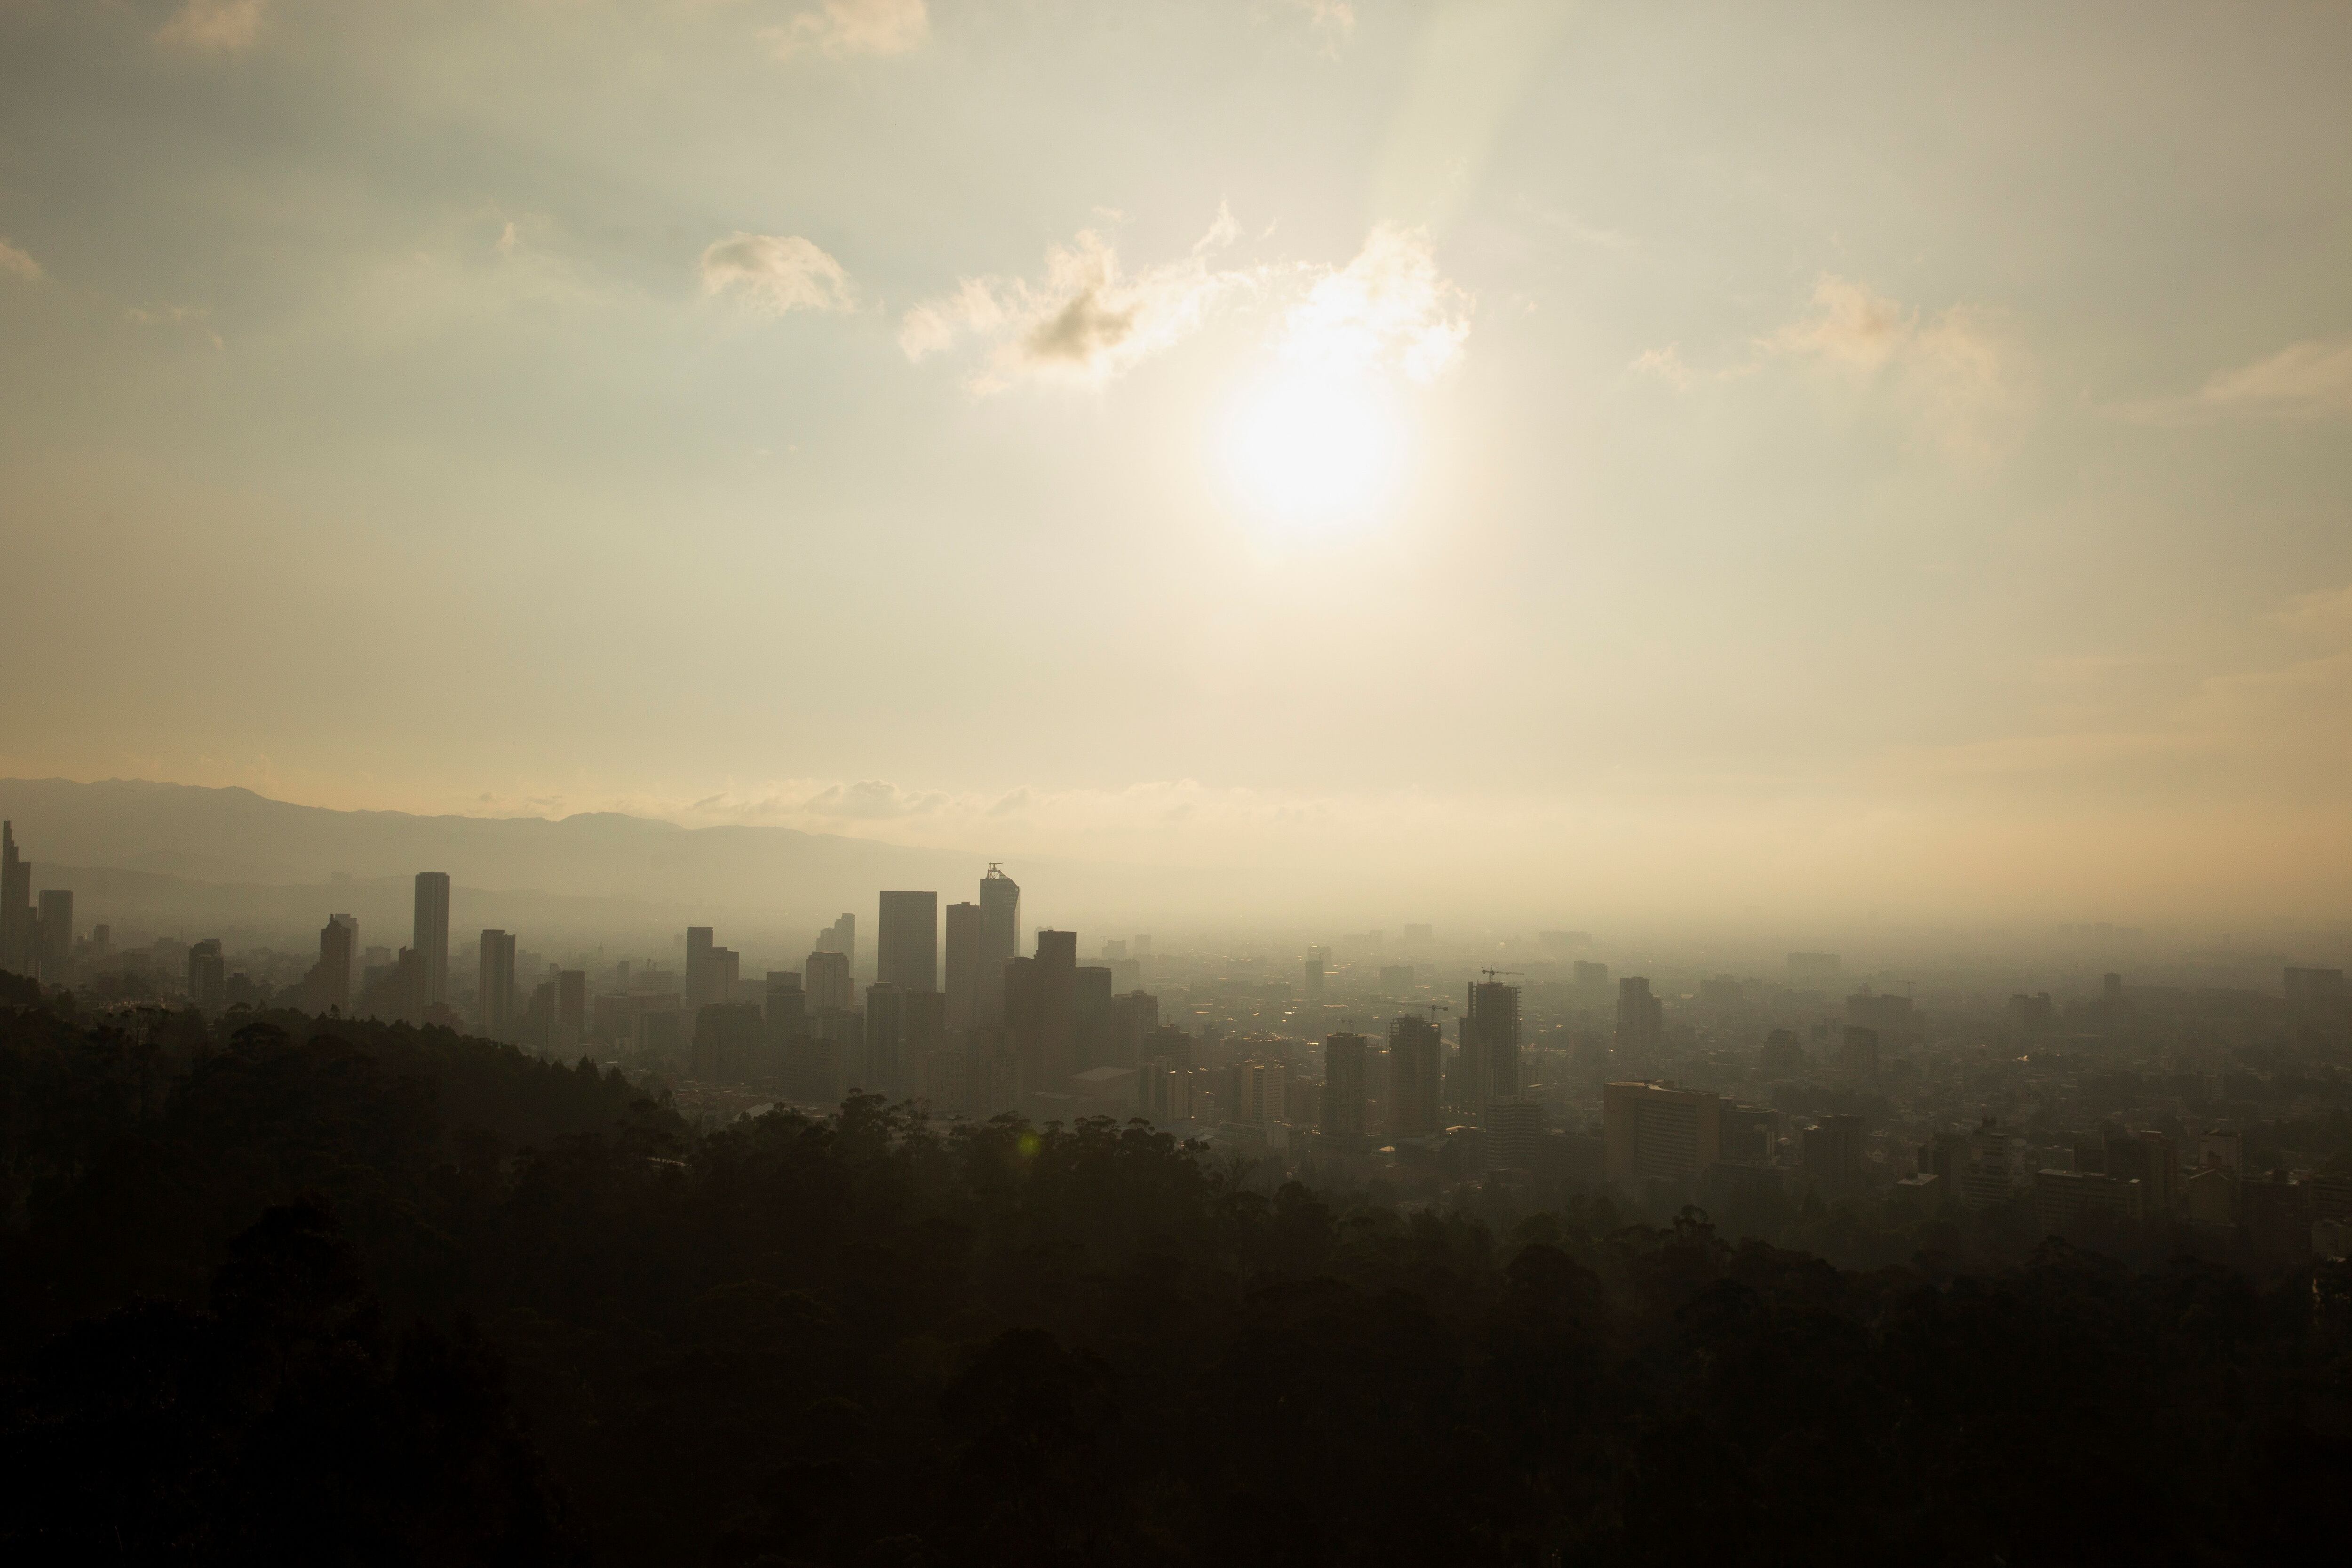 El gobierno distrital declaró emergencia por calidad del aire debido a los incendios forestales en los cerros orientales de Bogotá - crédito Antonio Cascio/Reuters